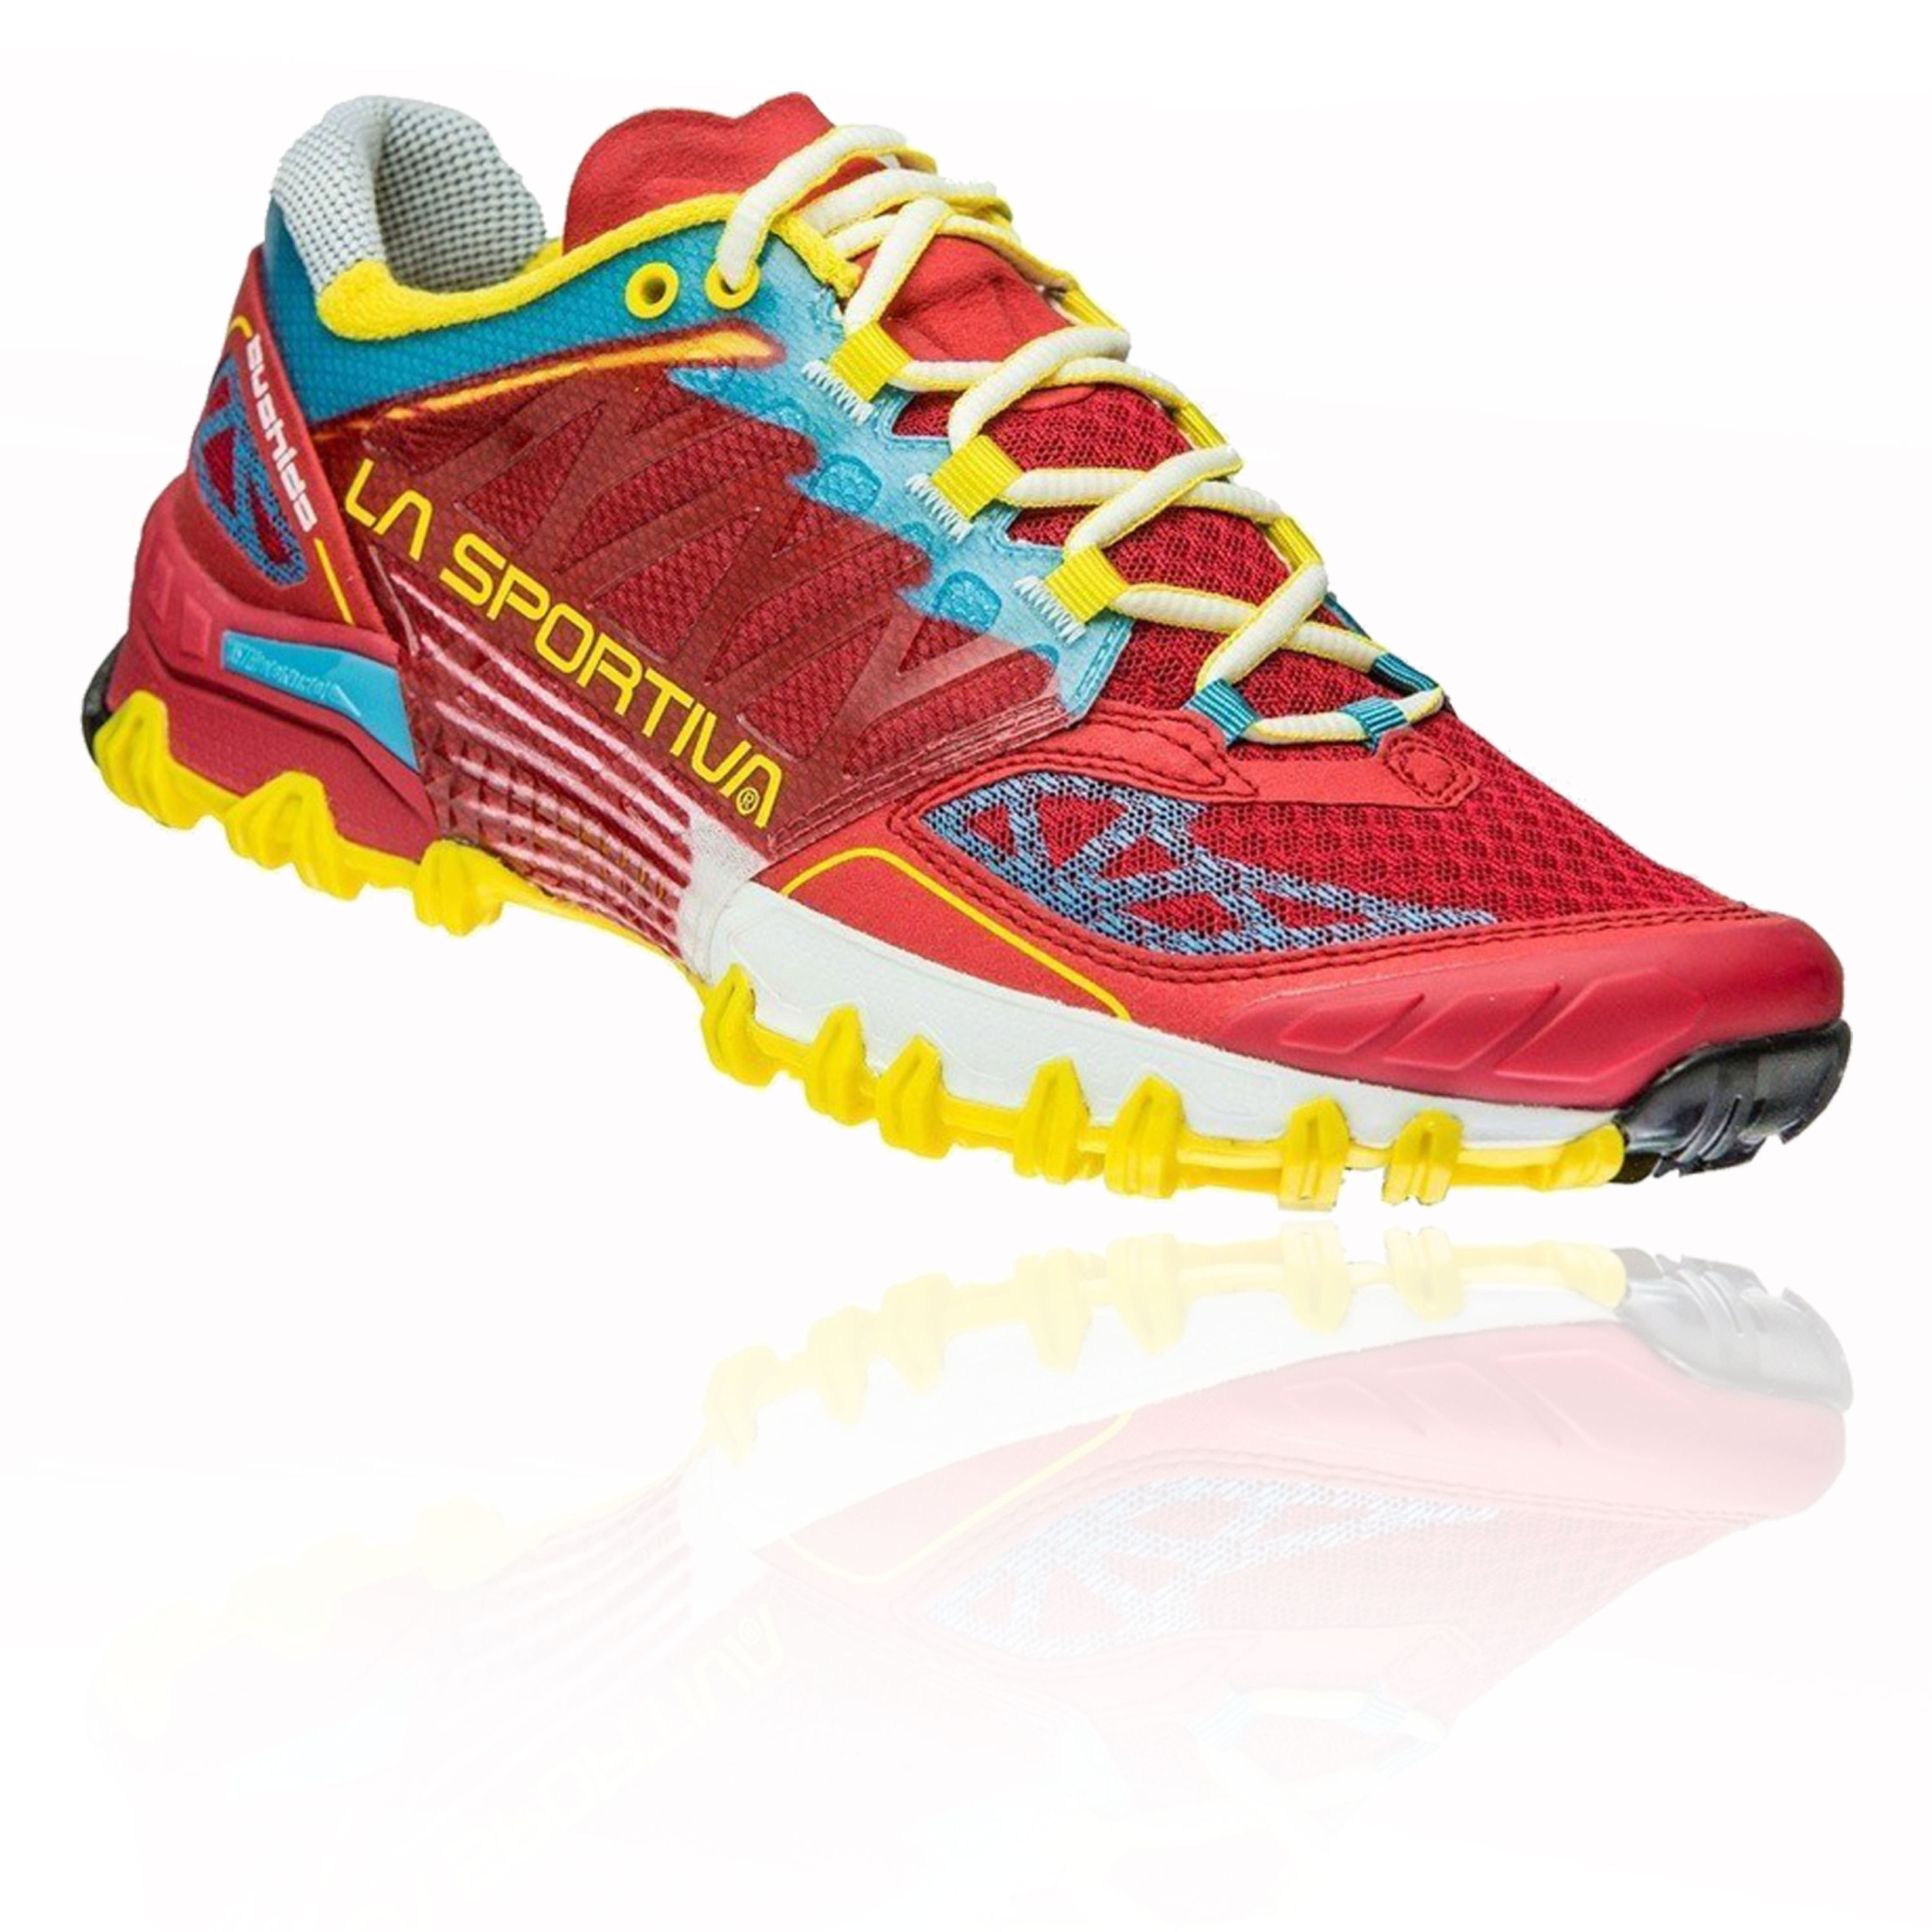 La Sportiva Bushido Women's Trail Running Shoes